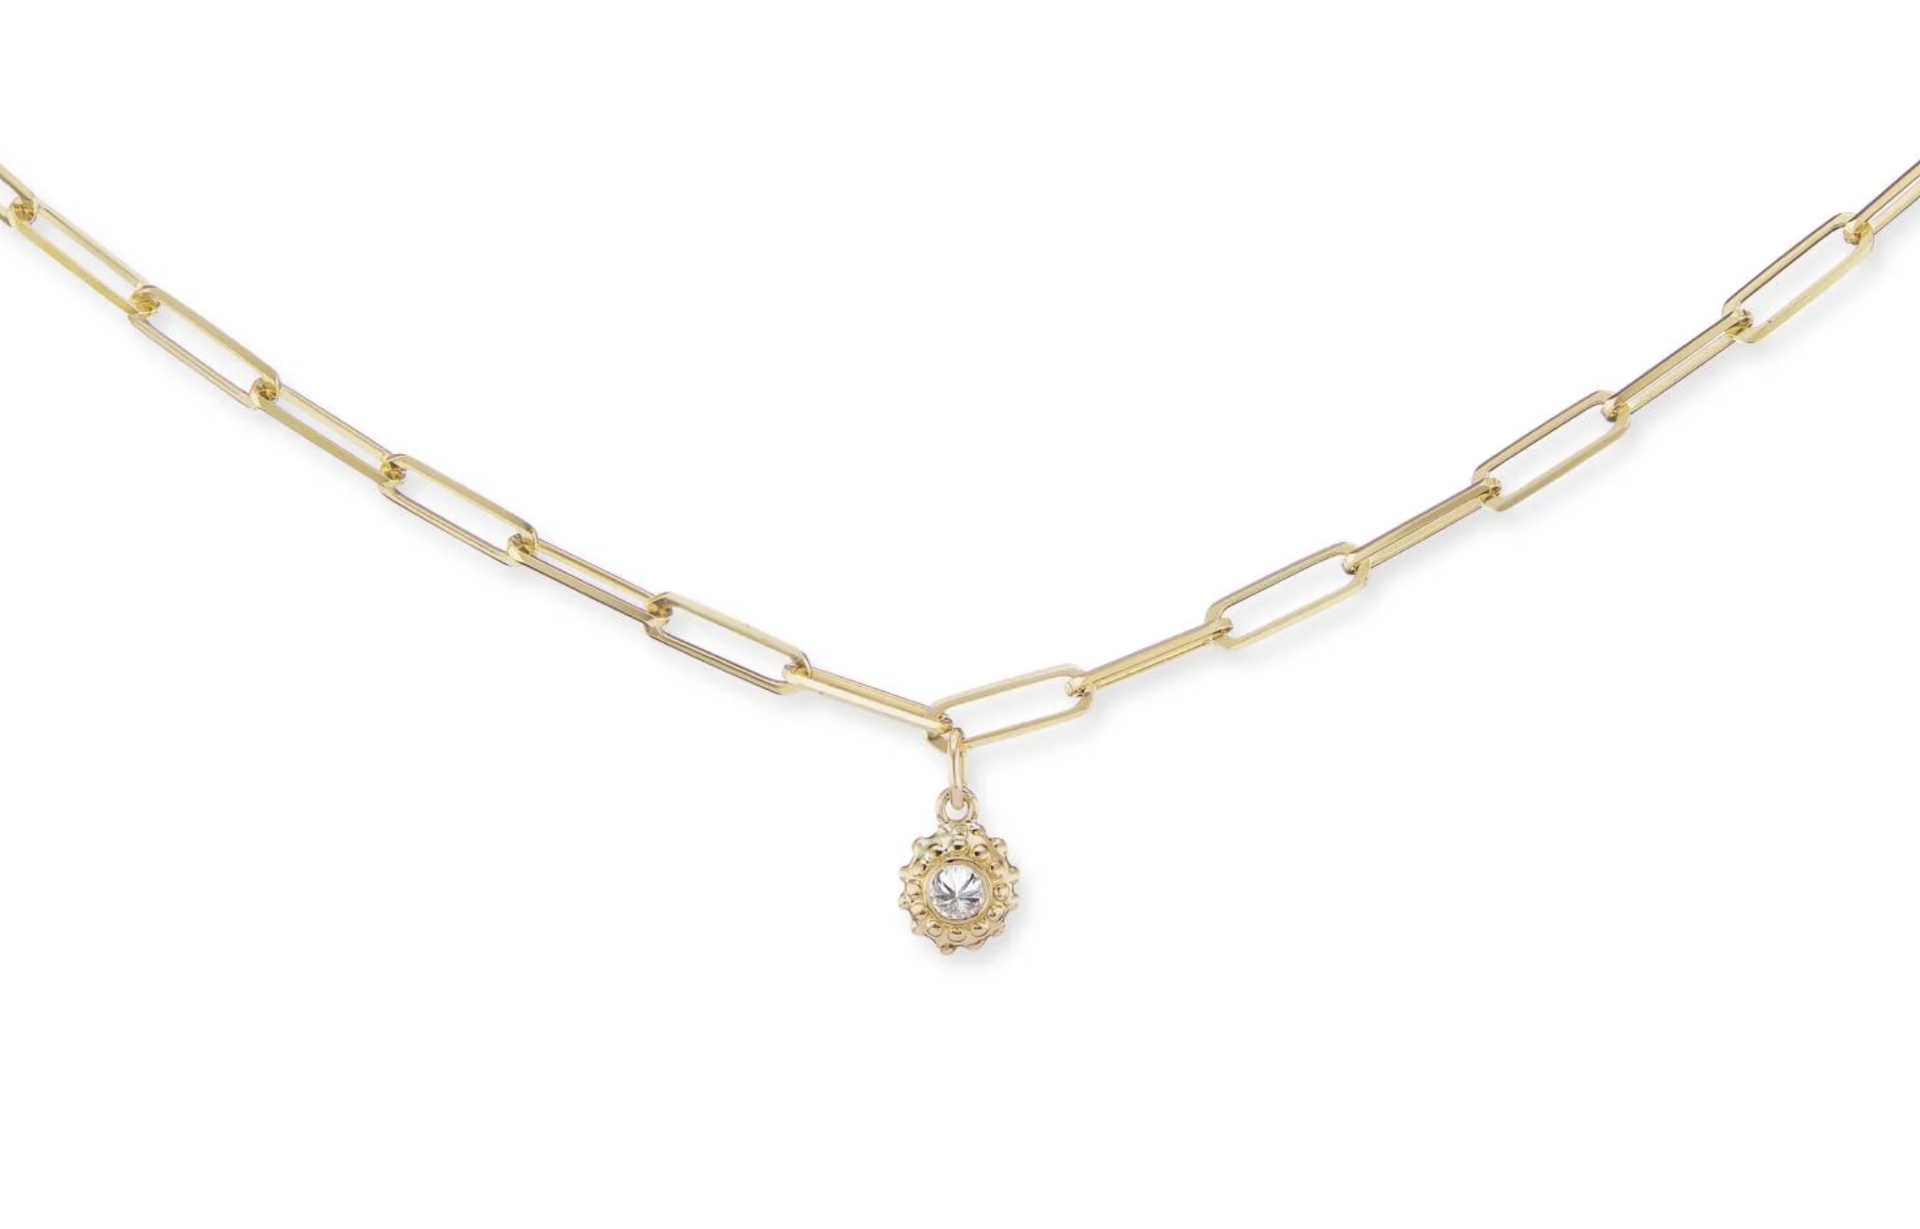 California Dreaming Diamond Necklace by Ana Katarina